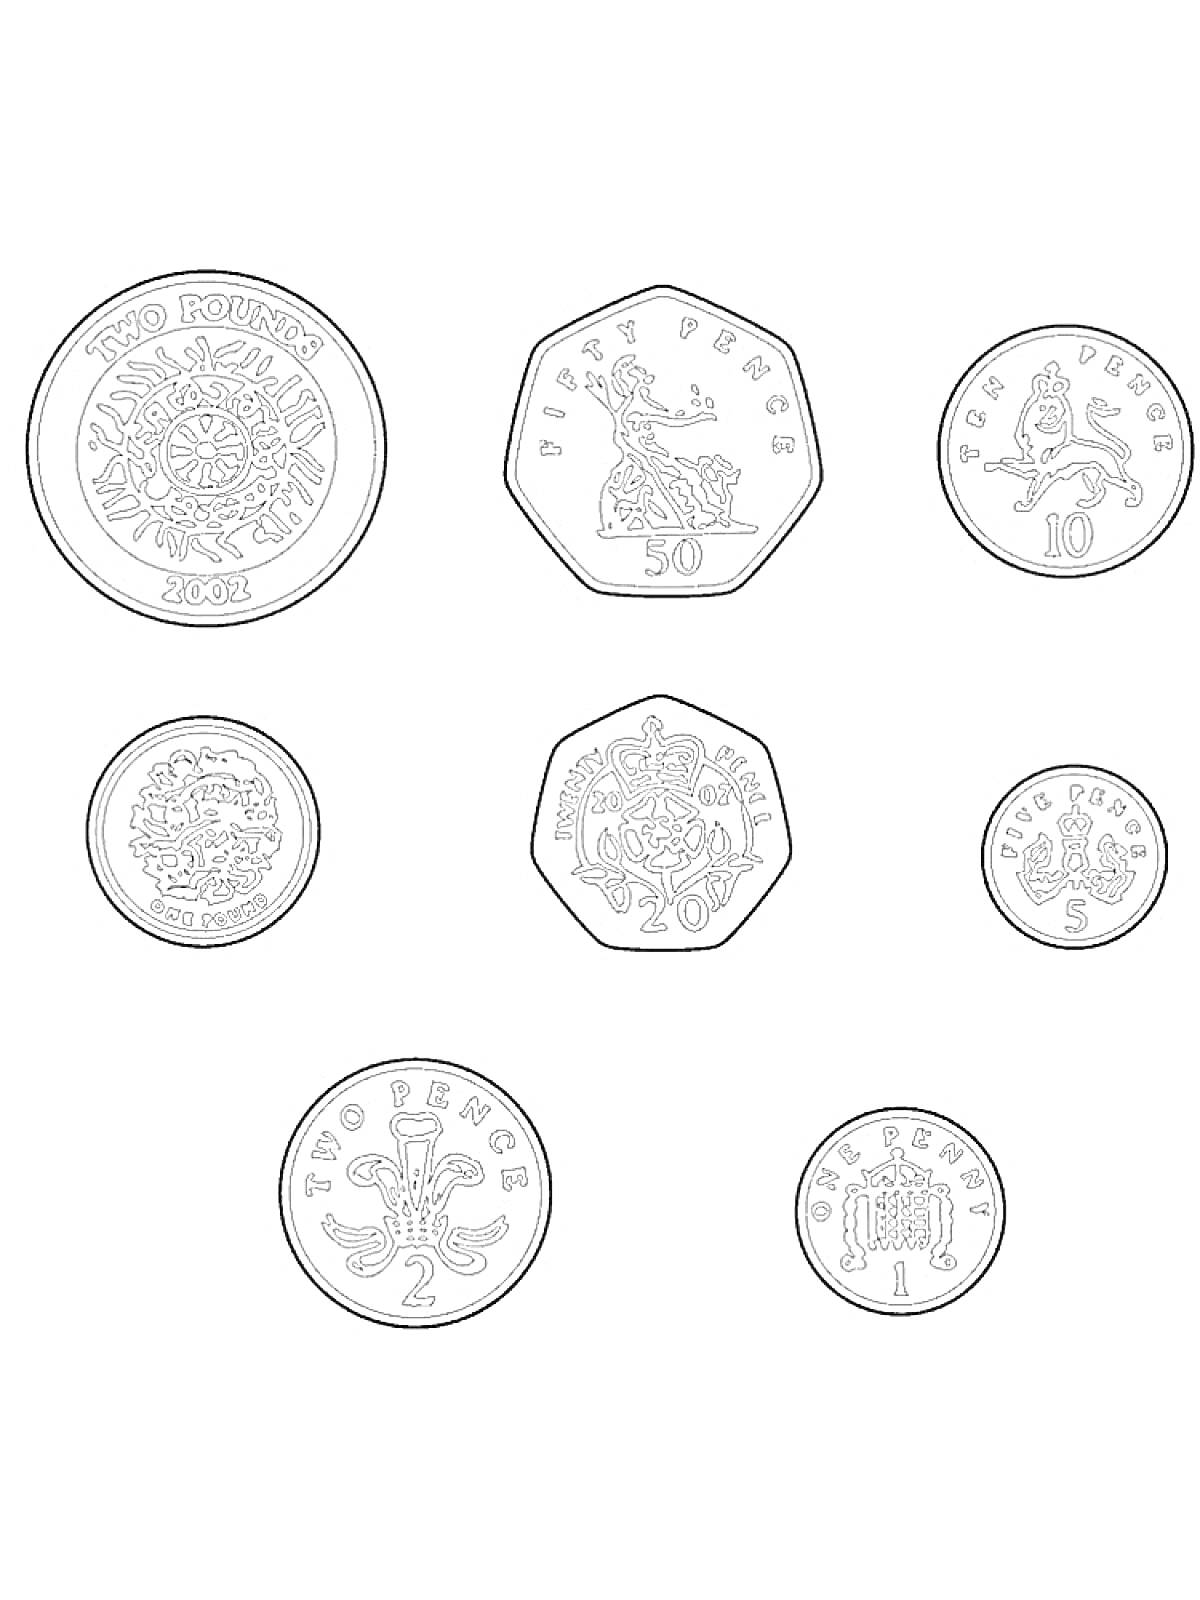 Раскраска с изображением монет разного номинала: 2 фунта, 50 пенсов, 10 пенсов, 20 пенсов, 5 пенсов, 2 пенса и 1 пенс